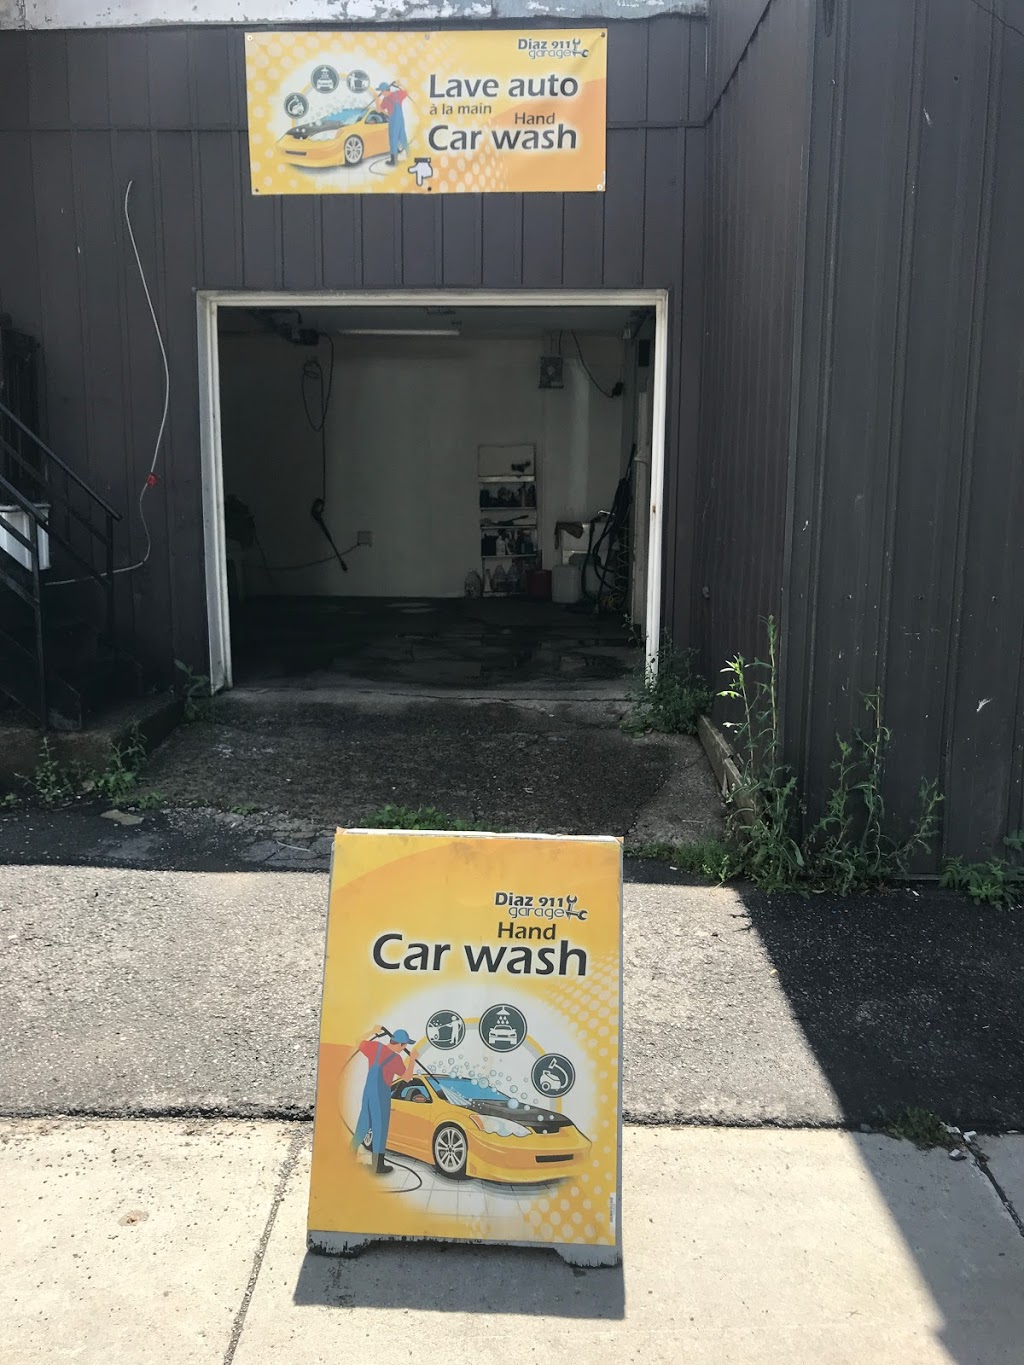 Auto-Lavage /Car wash Diaz 911 | 611 Rue Caisse, Verdun, QC H4G 2E2, Canada | Phone: (514) 476-9397